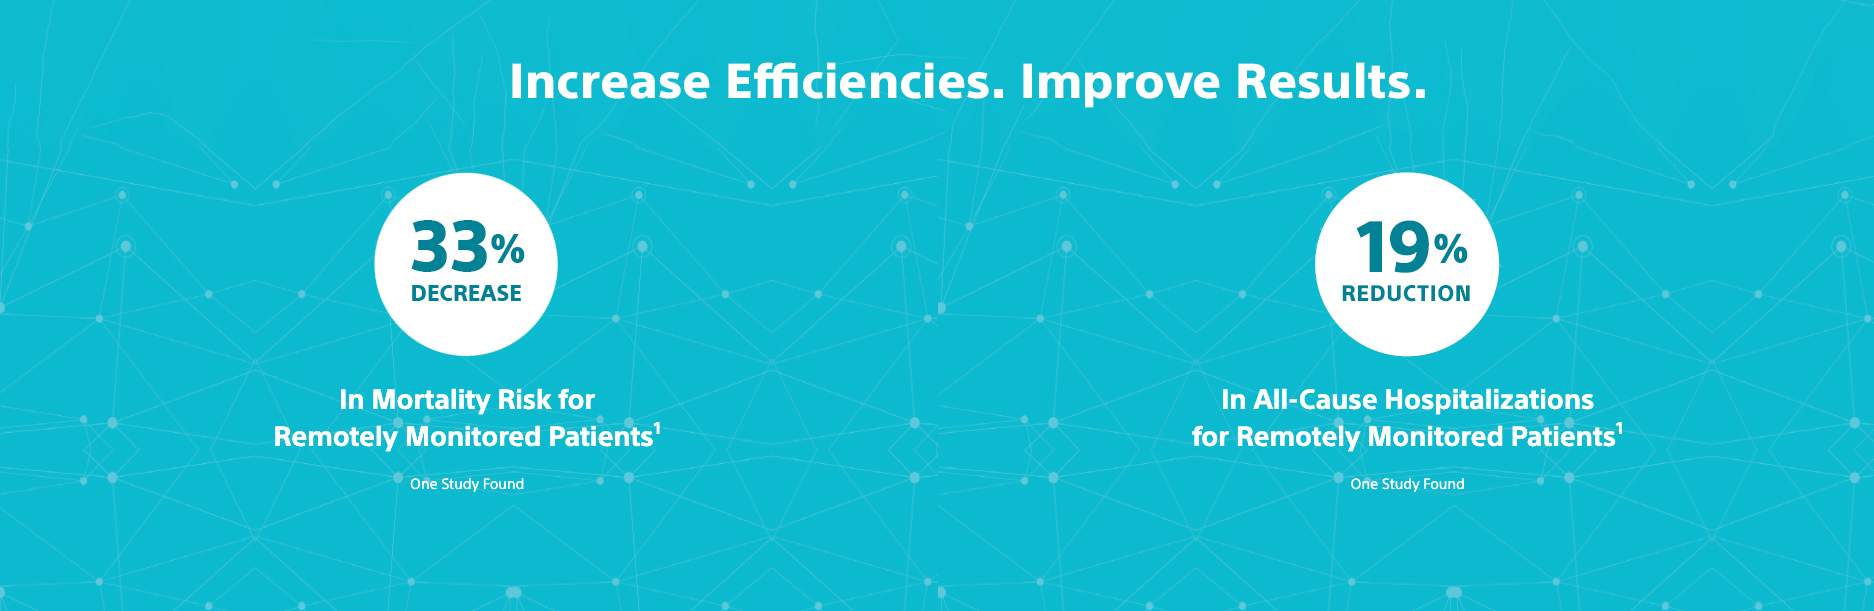 Increase Efficiencies. Improve Results